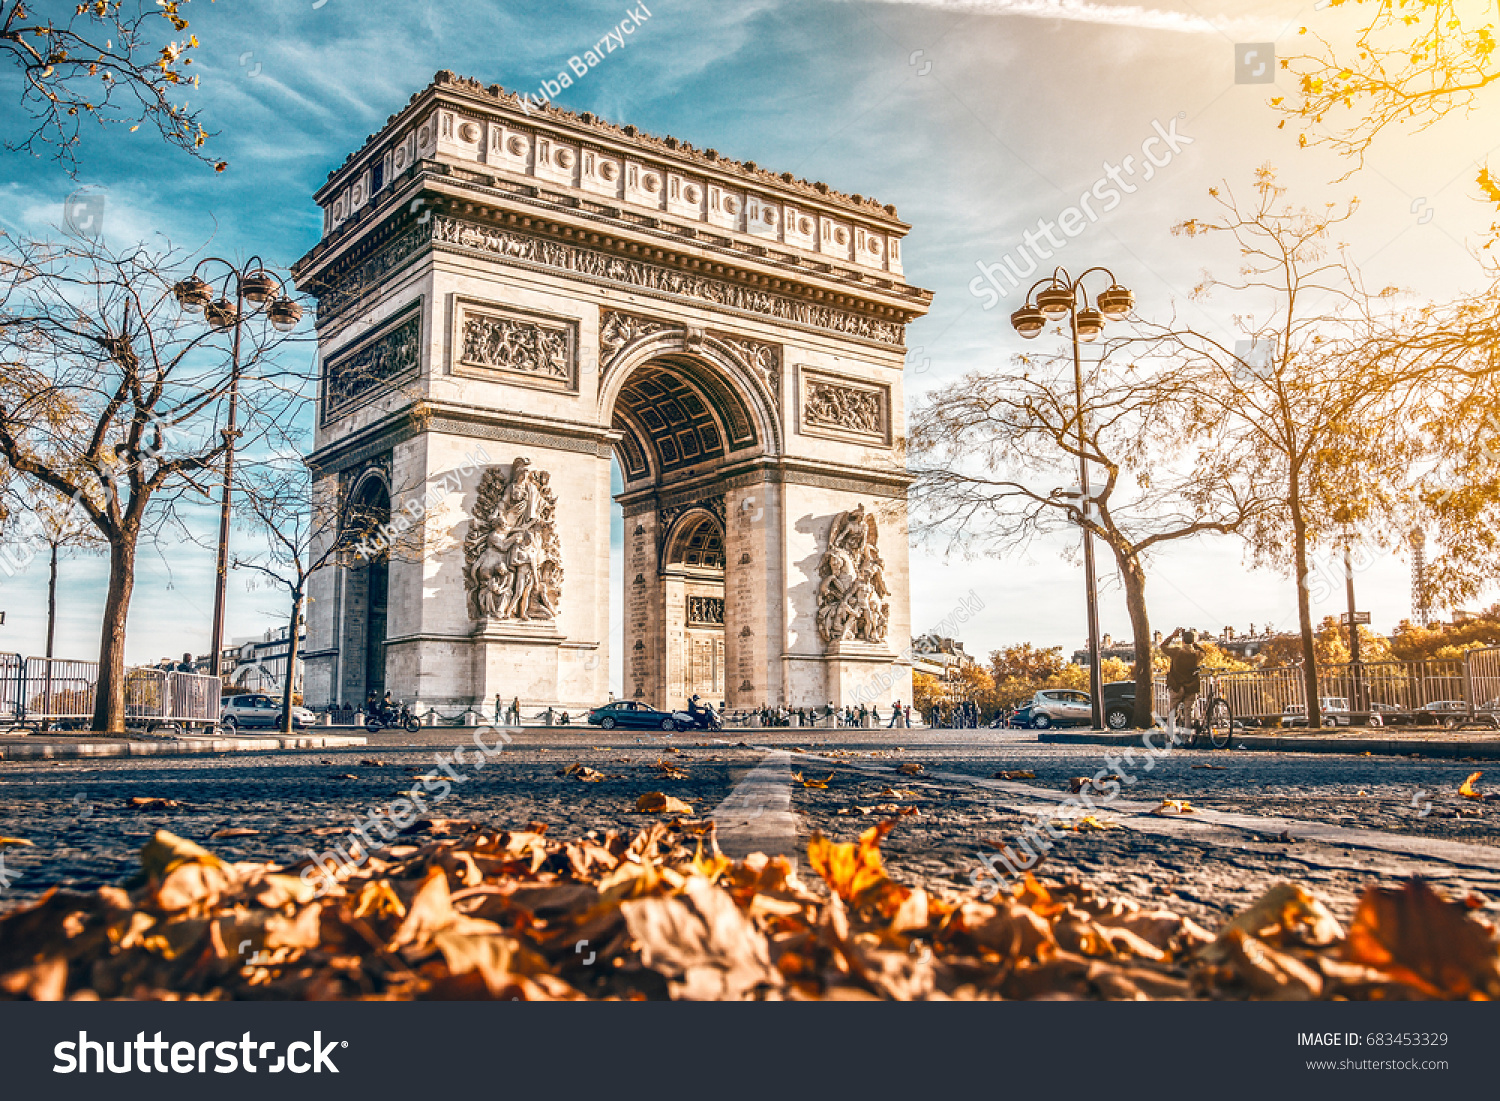 Arc de Triomphe located in Paris, in autumn scenery. #683453329